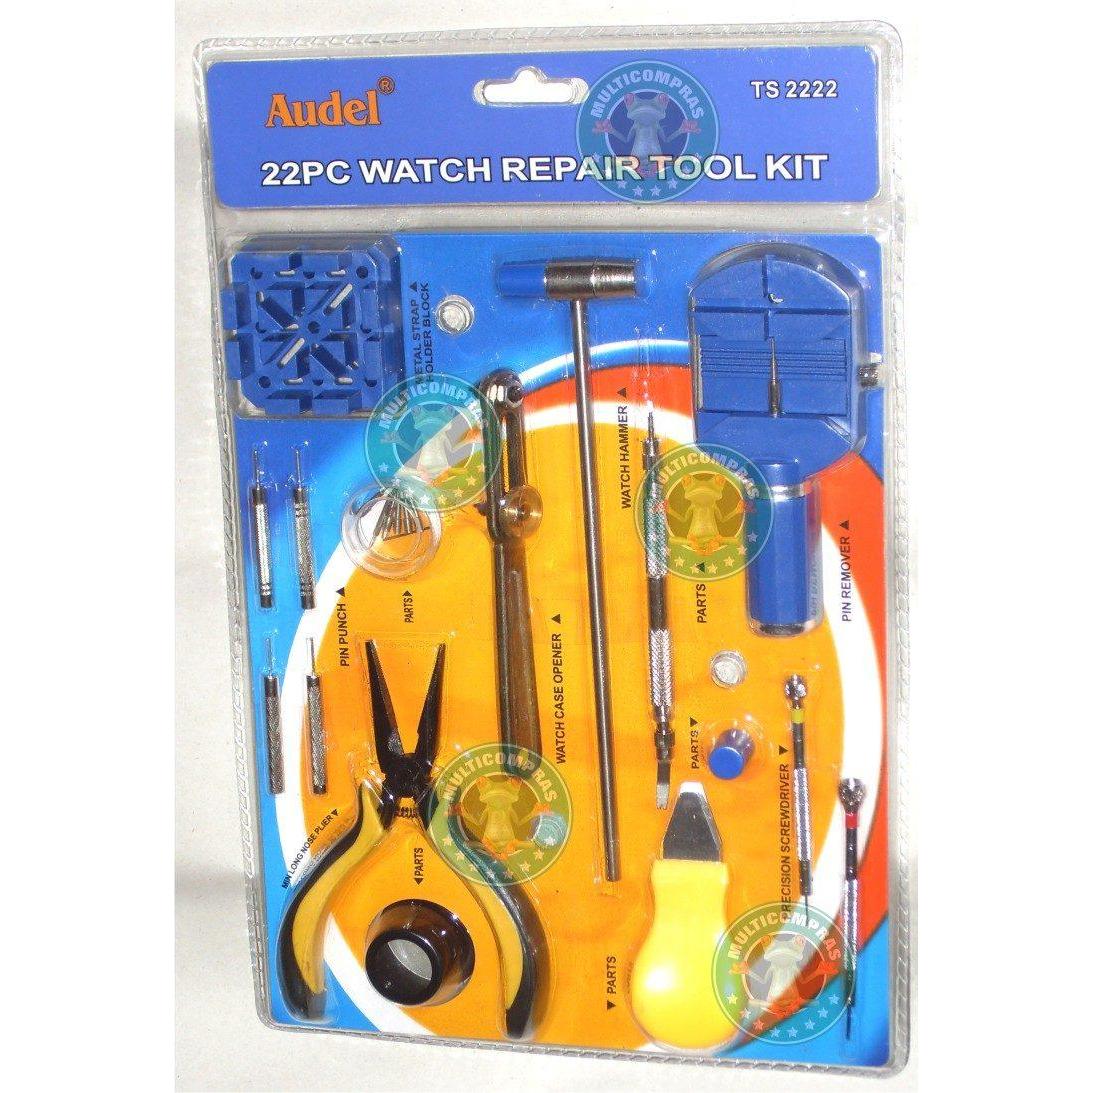  Si buscas Kit D Herramientas Para Relojeros Joyeros Practico 22piezas puedes comprarlo con MULTI COMPRAS está en venta al mejor precio